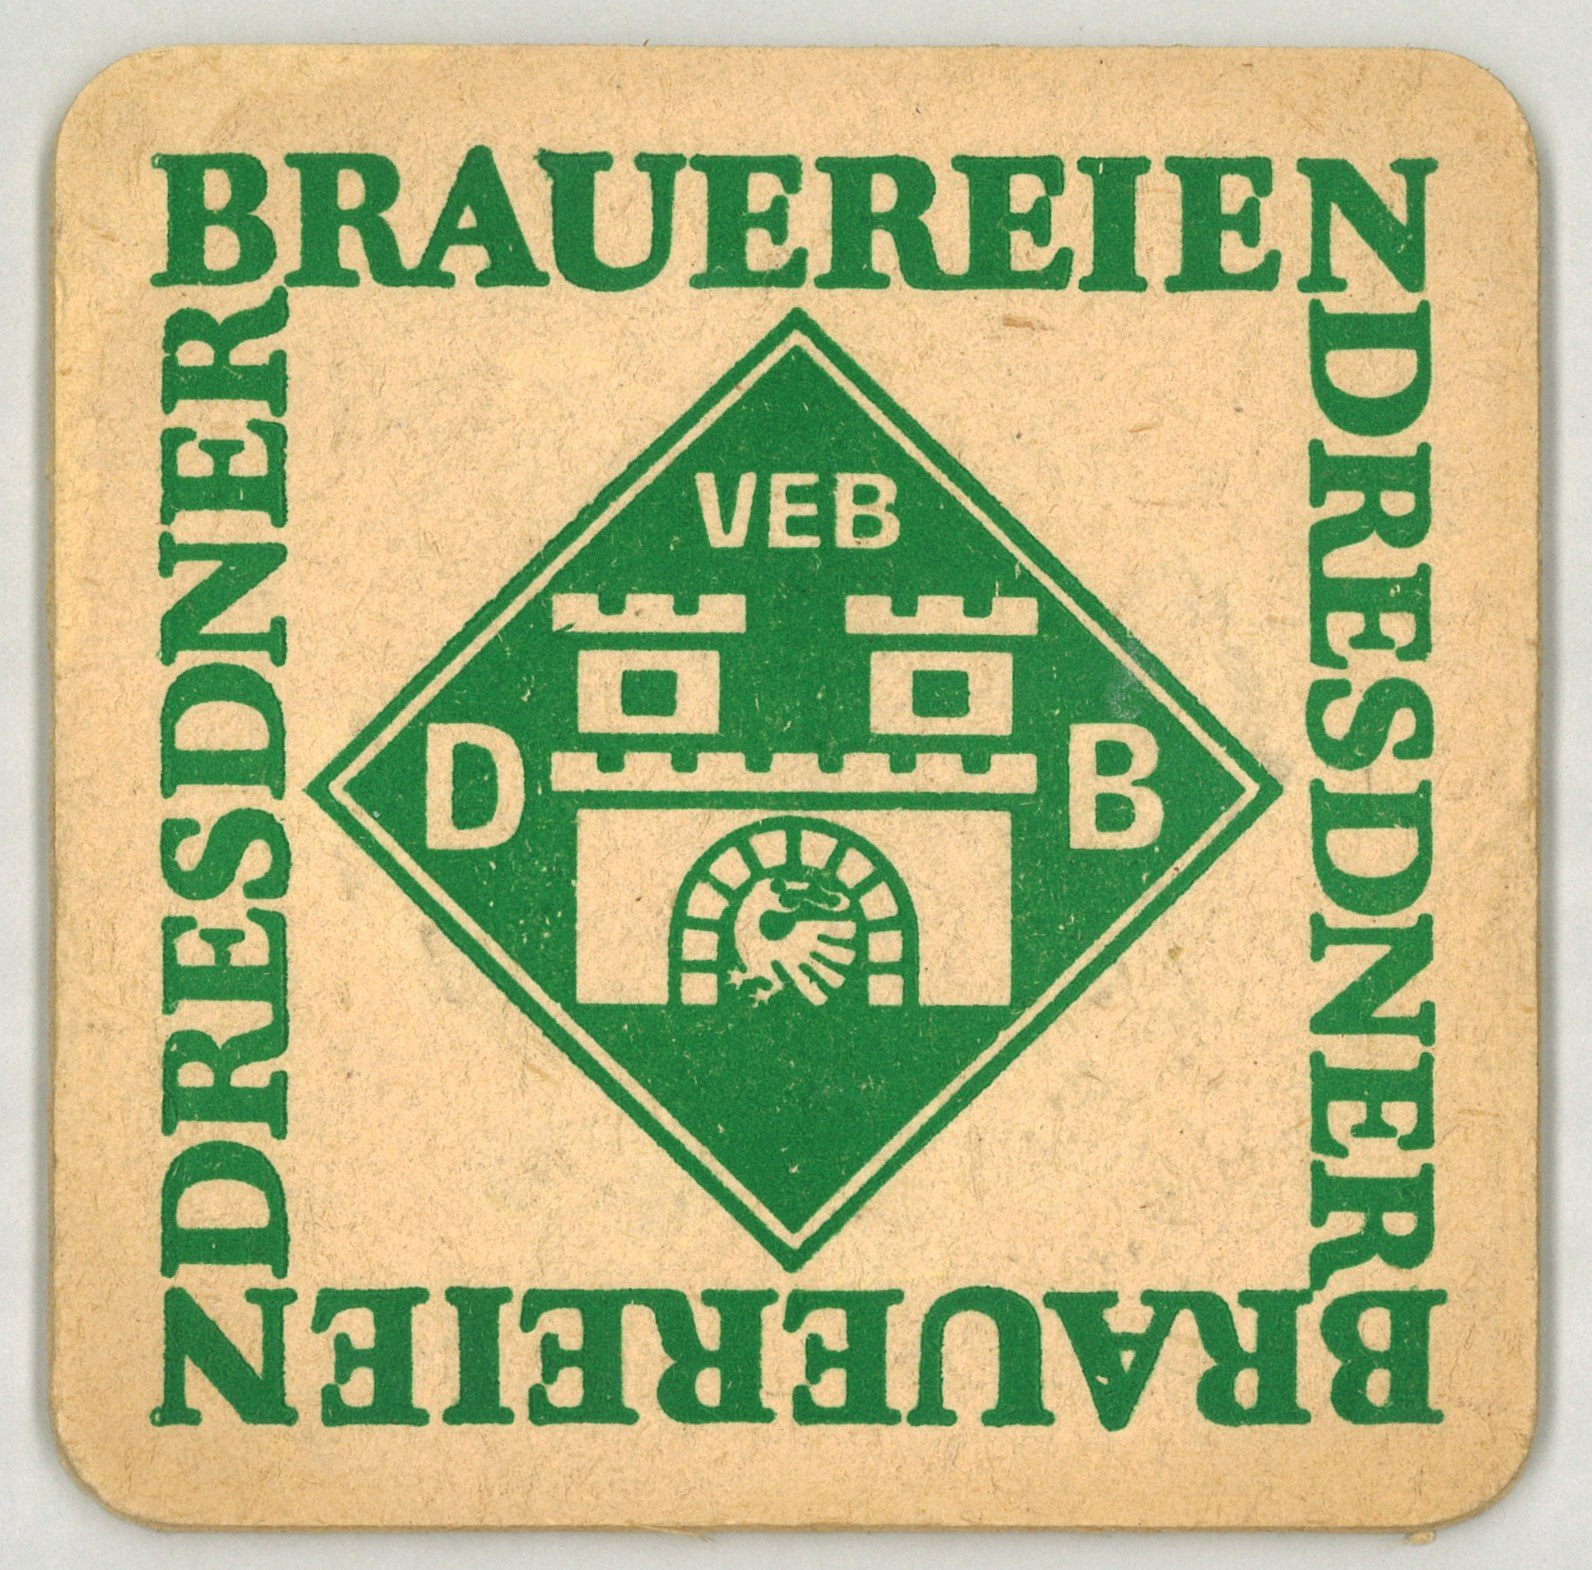 Dresden: VEB Dresdner Brauereien (Landesgeschichtliche Vereinigung für die Mark Brandenburg e.V., Archiv CC BY)